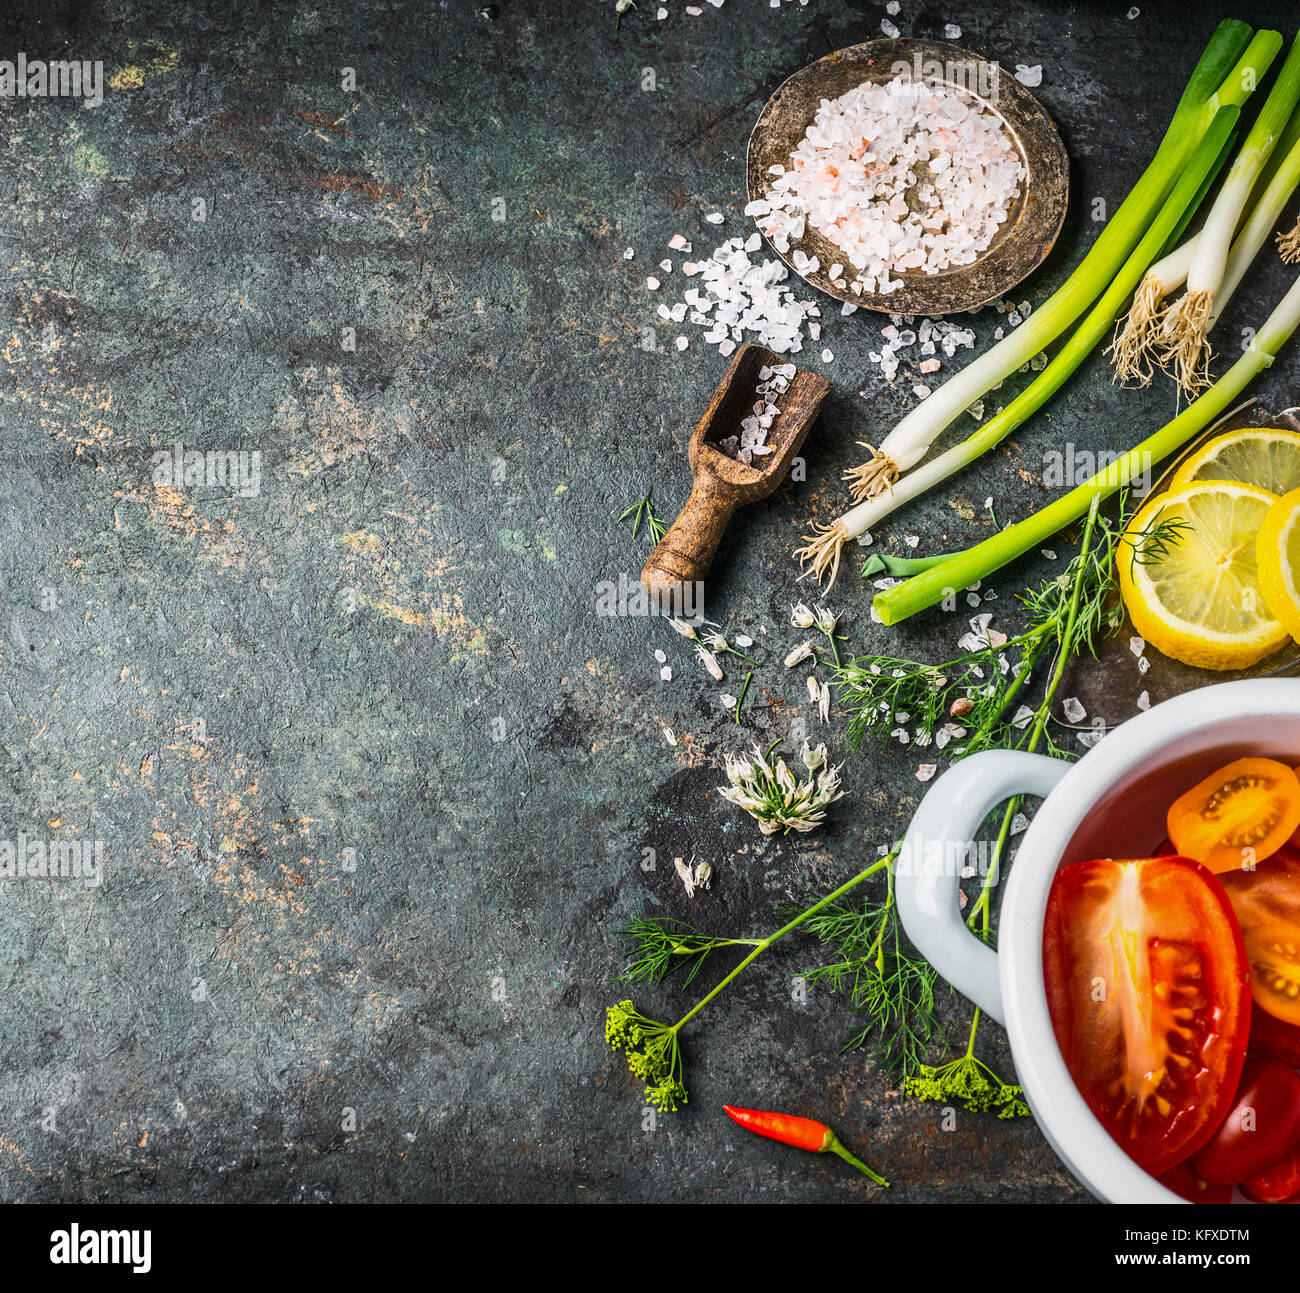 Arrière-plan de l'alimentation pour régime alimentaire sain , ou végétarien Recettes de cuisine avec des légumes frais et épices Ingrédients, vue de dessus, la place pour le texte Banque D'Images